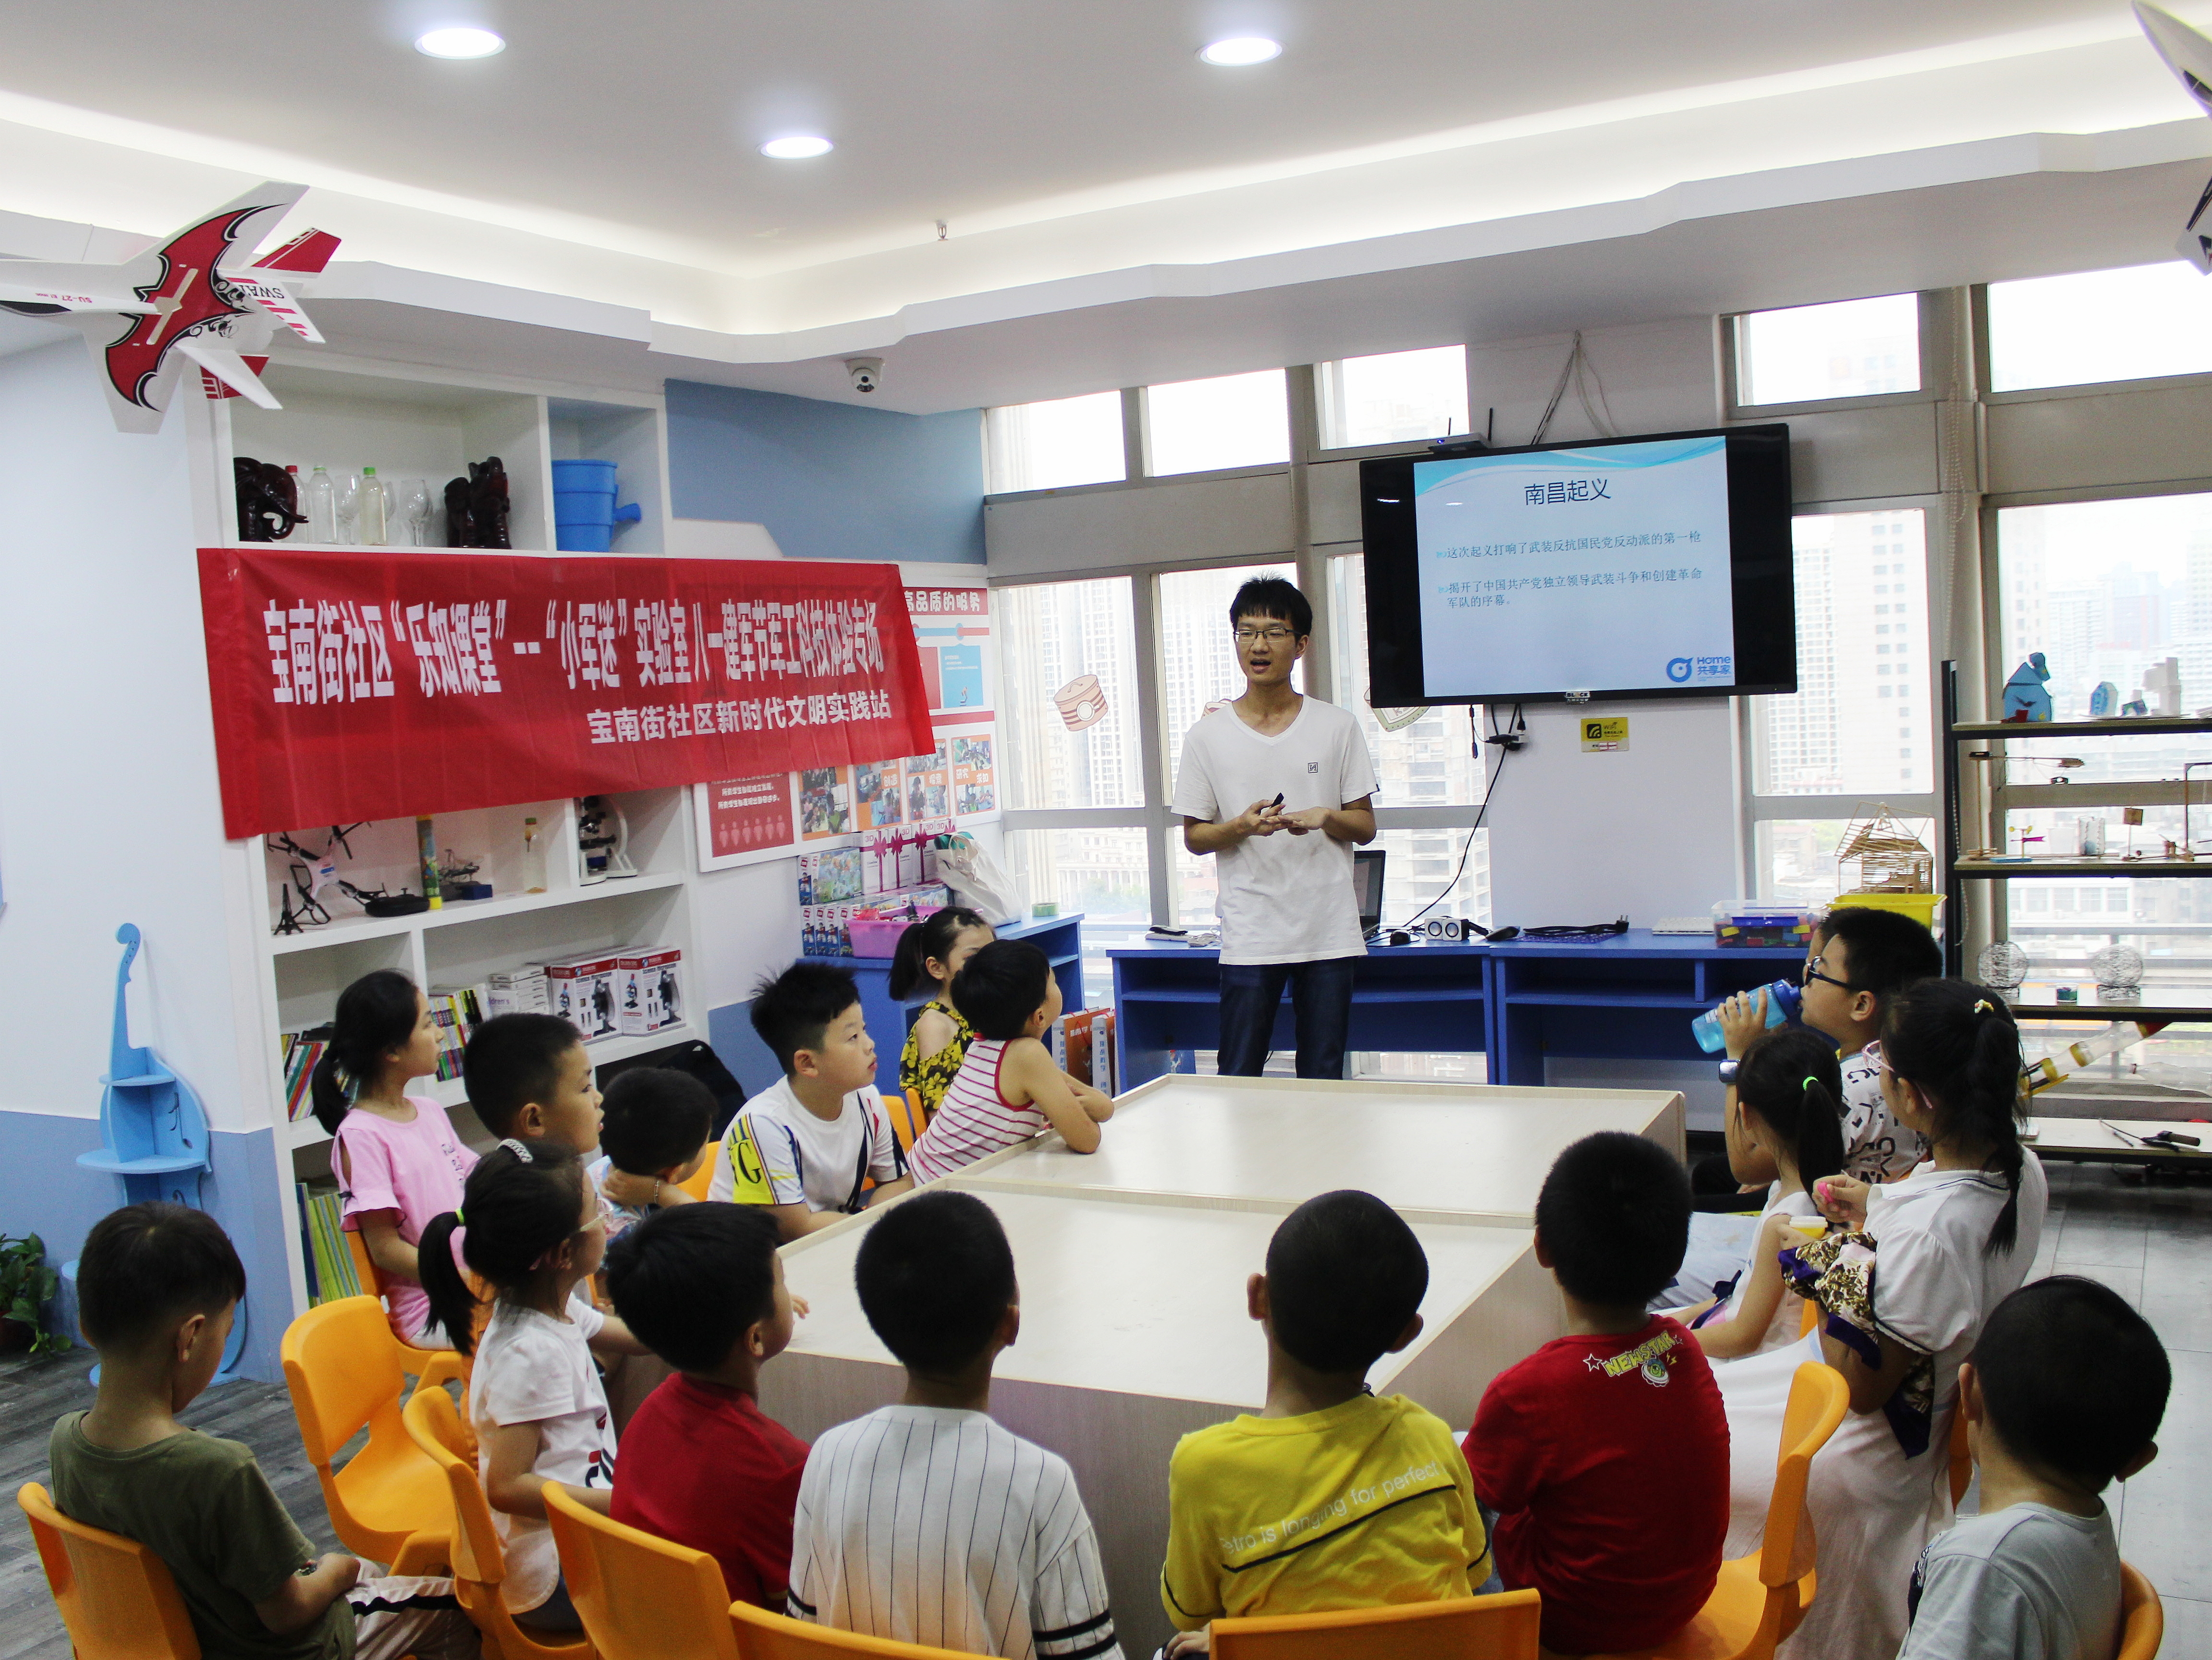 来自湖南师范大学的青年志愿者王韬用图文并茂的方式带孩子们学习建军节的由来。  长沙晚报通讯员 吴永珍 摄